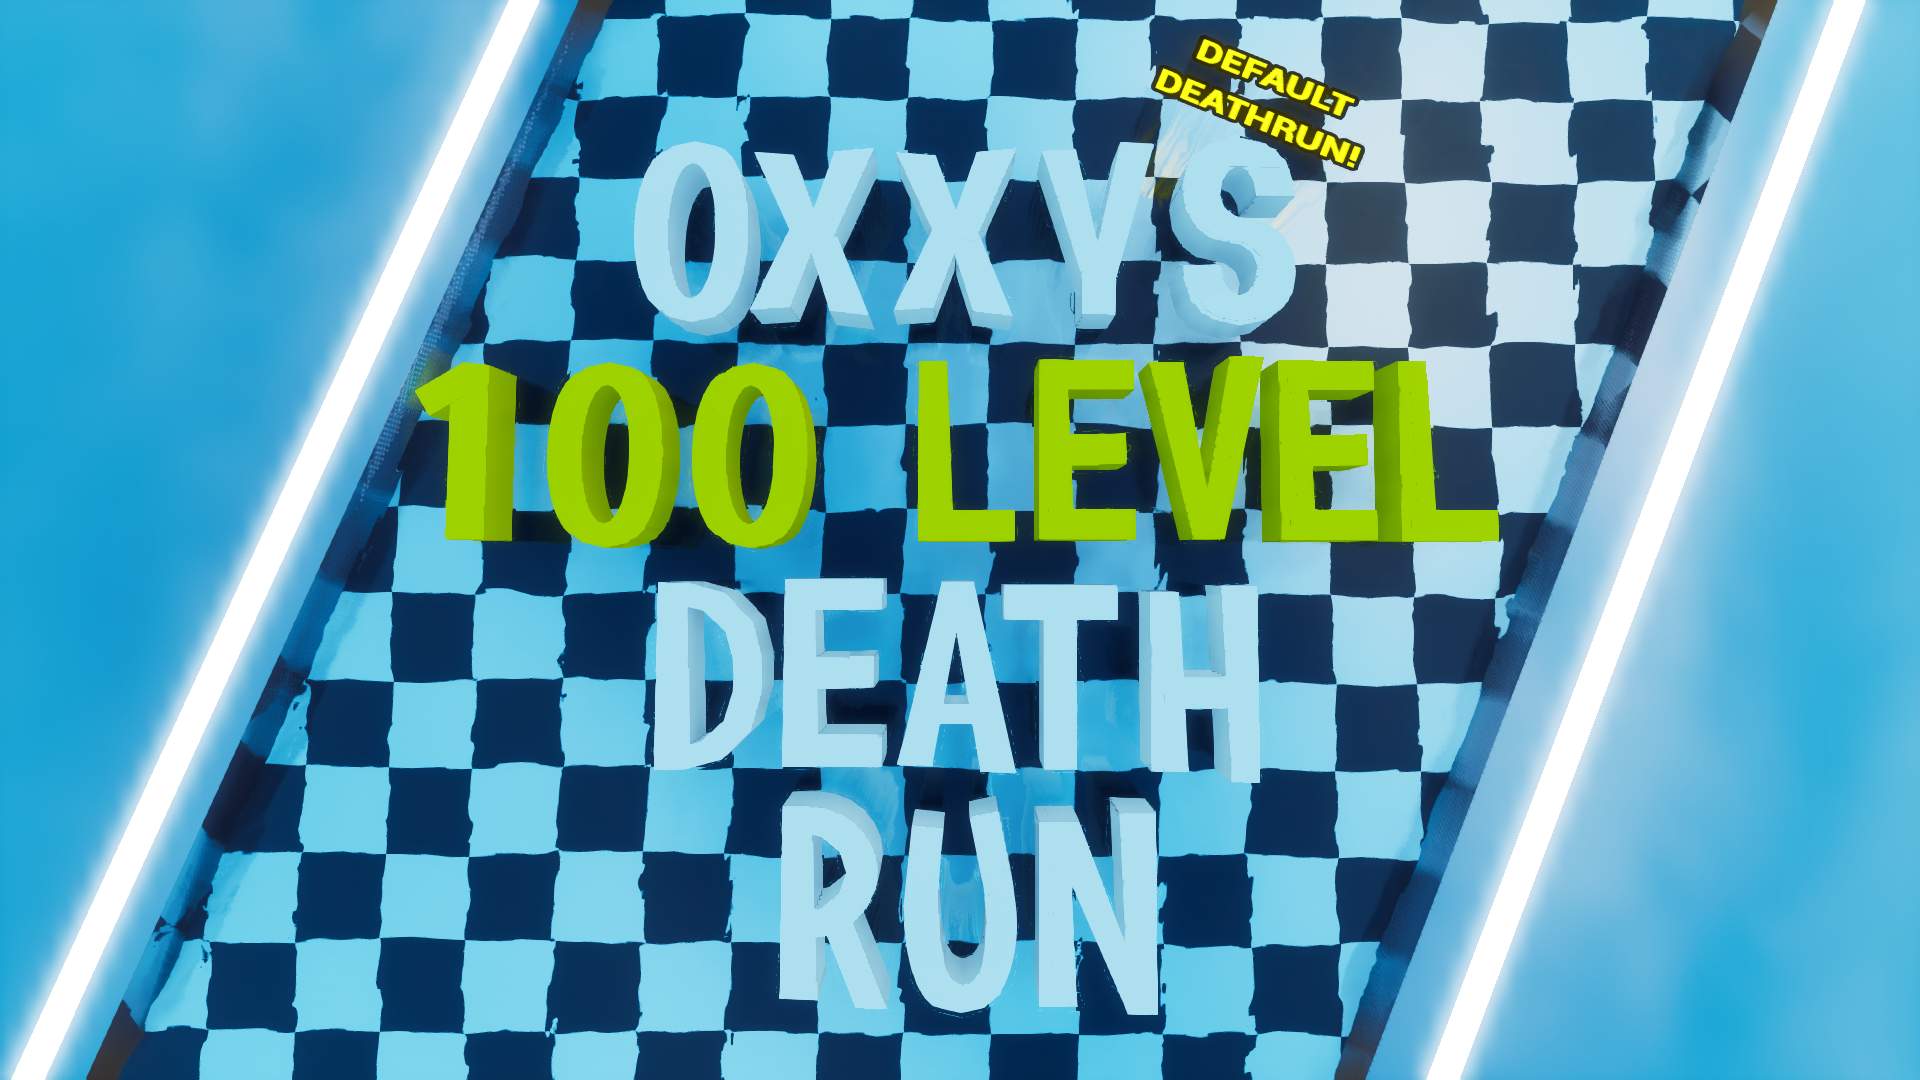 ✨ OXXYFN'S 100 LEVEL DEFAULT DEATHRUN! ✨